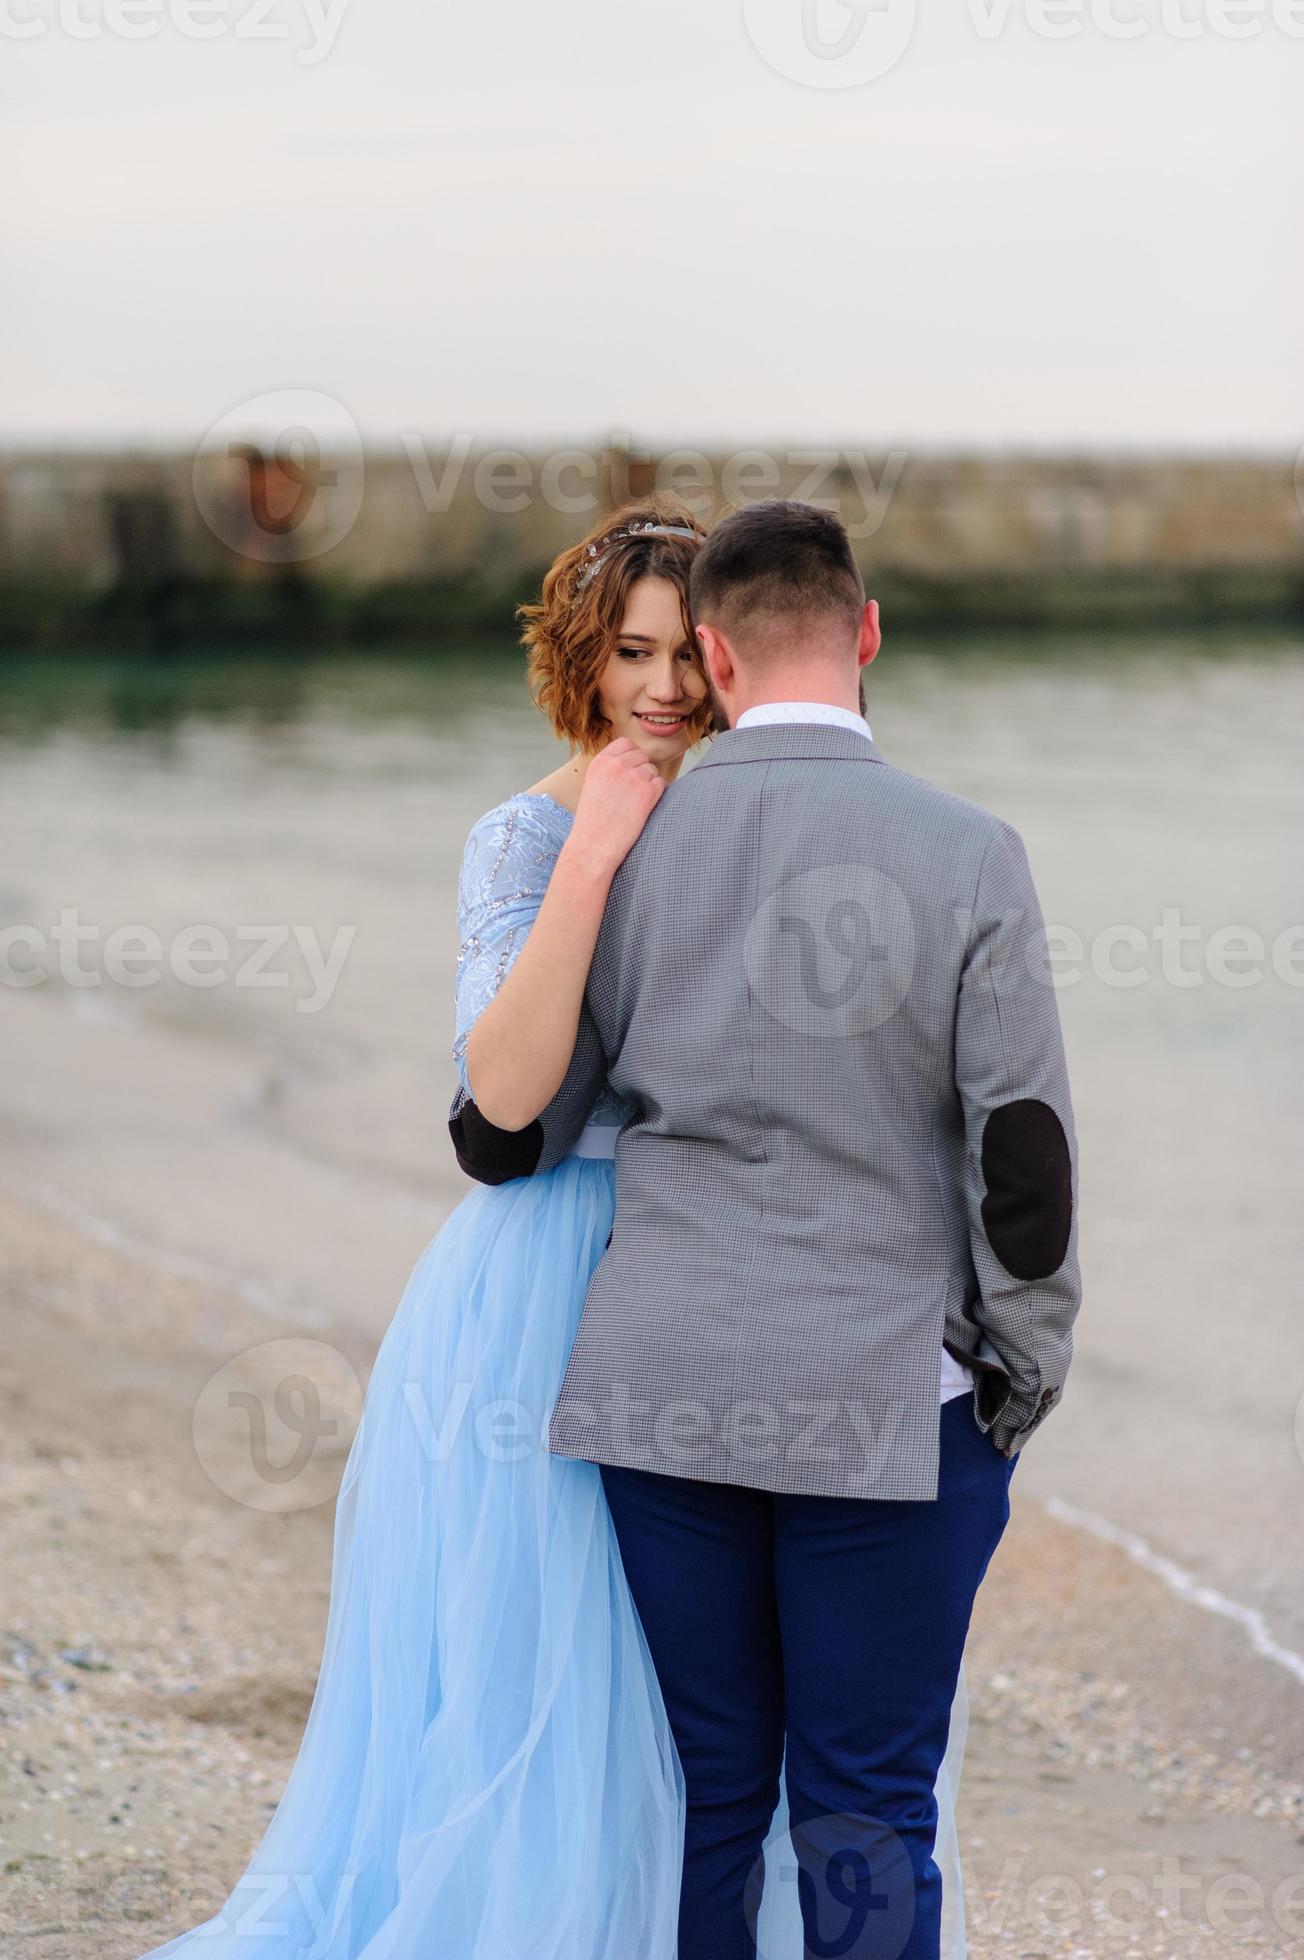 salon Steen Wrijven bruiloft fotosessie van een paar aan de kust. blauwe trouwjurk op de bruid.  6673172 Stockfoto